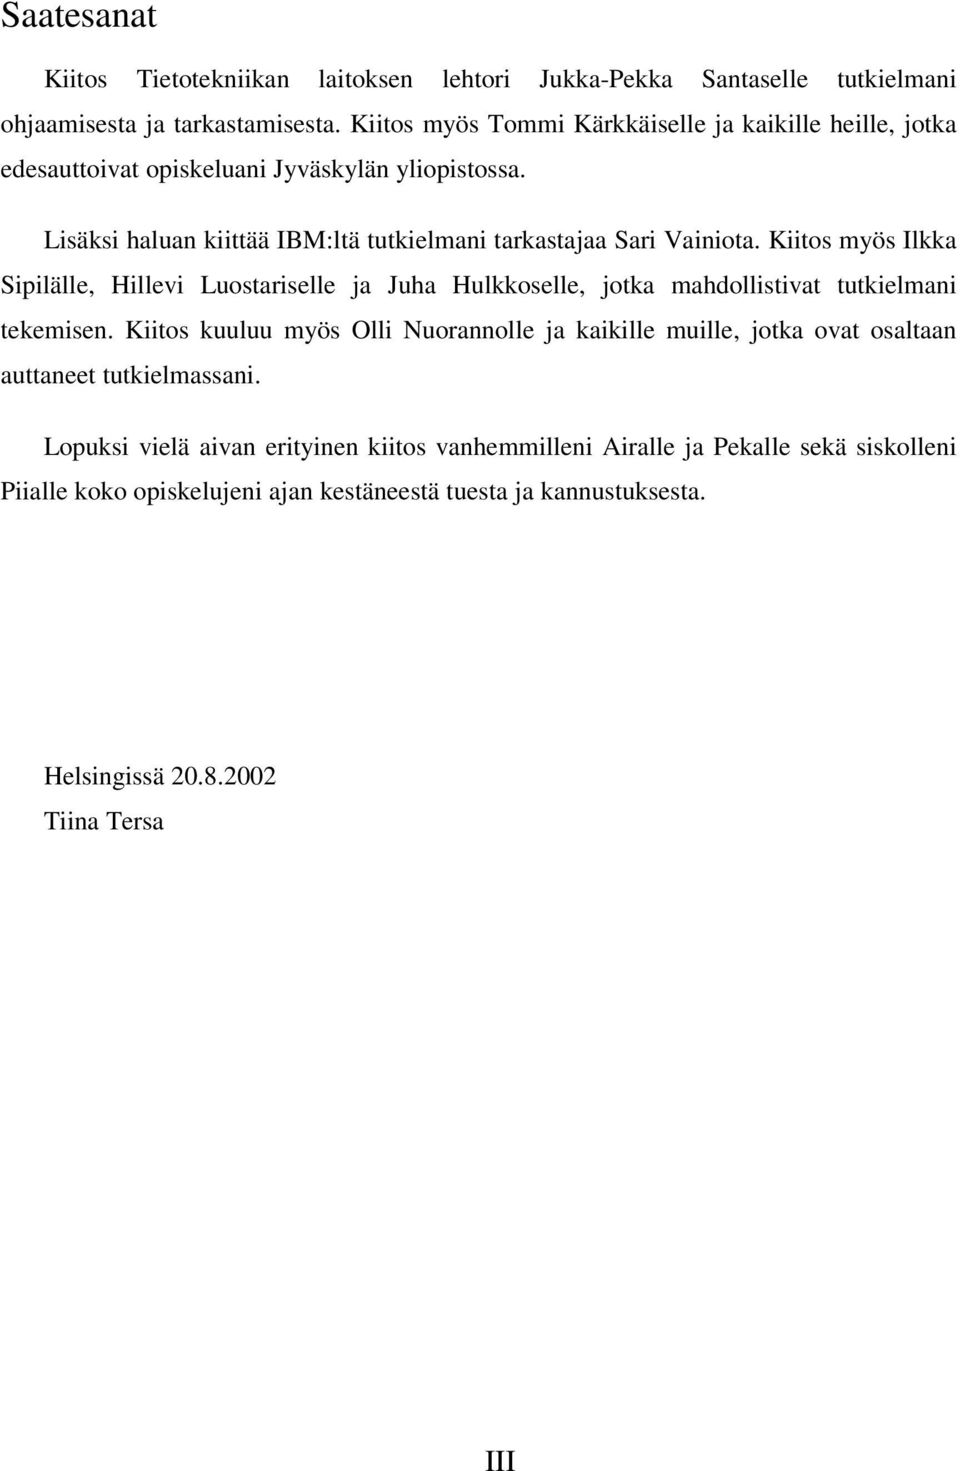 Kiitos myös Ilkka Sipilälle, Hillevi Luostariselle ja Juha Hulkkoselle, jotka mahdollistivat tutkielmani tekemisen.